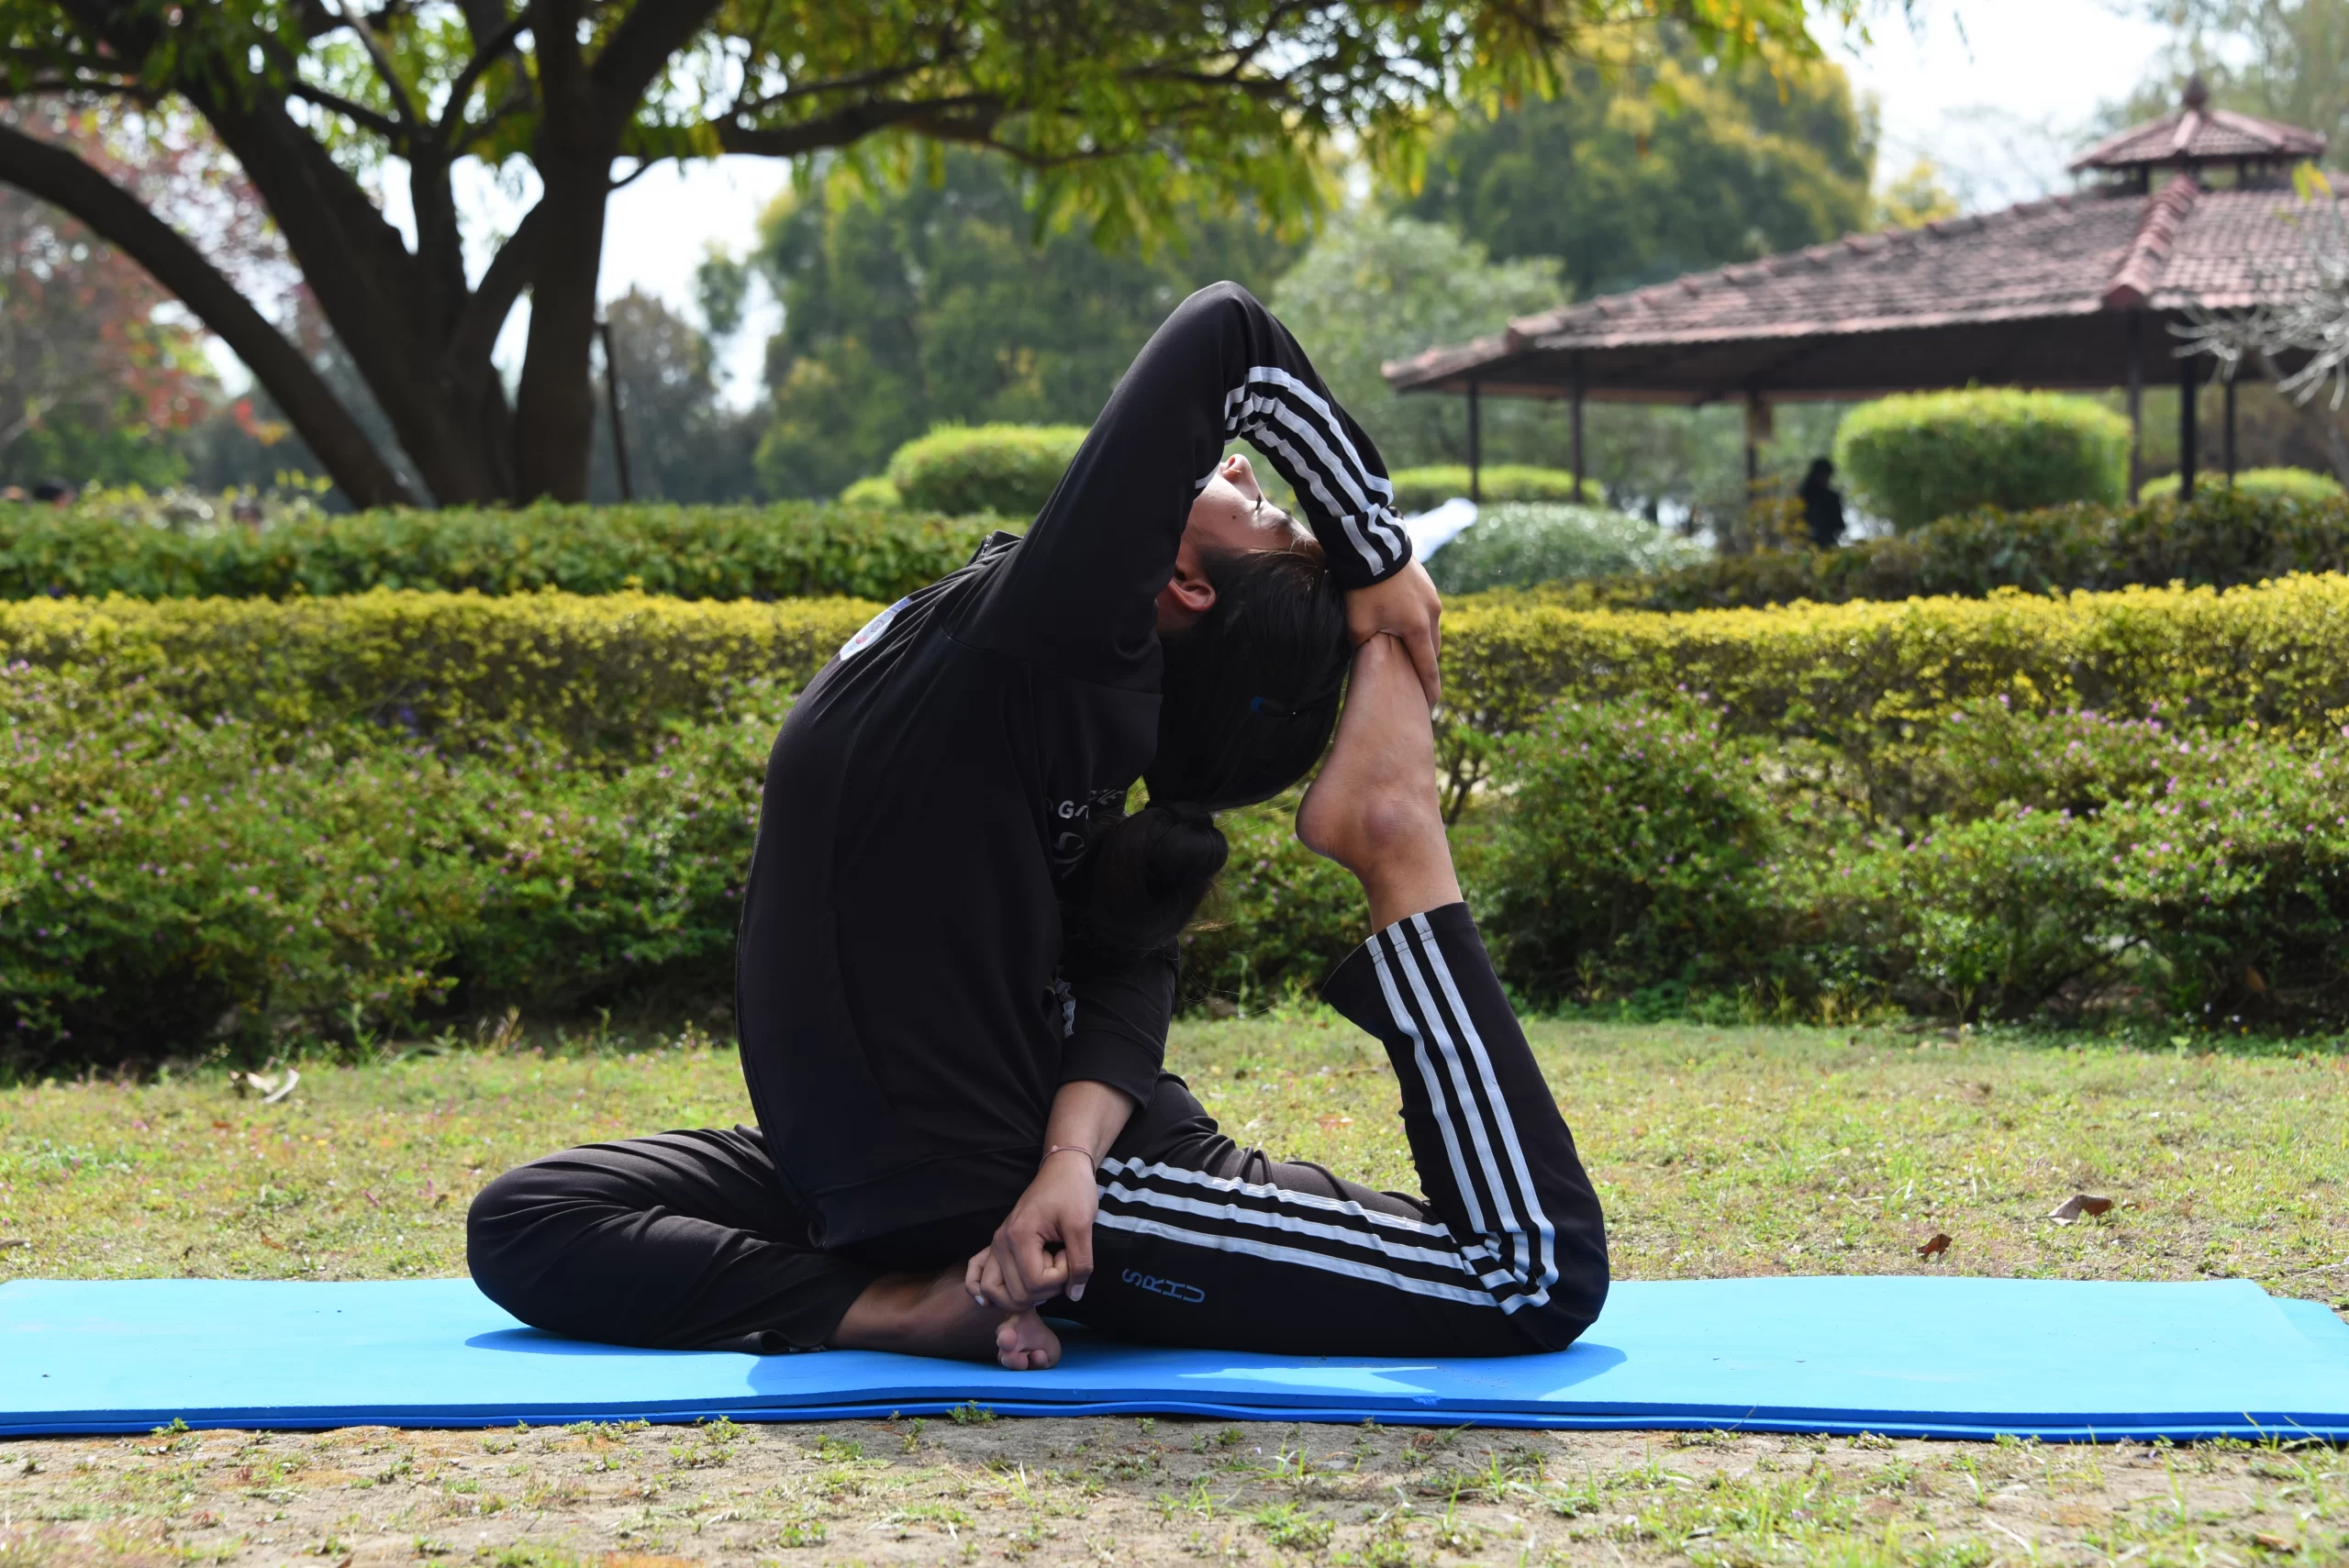 B.Sc. Yoga Science & Holistic Health at GHSST, Toli campus